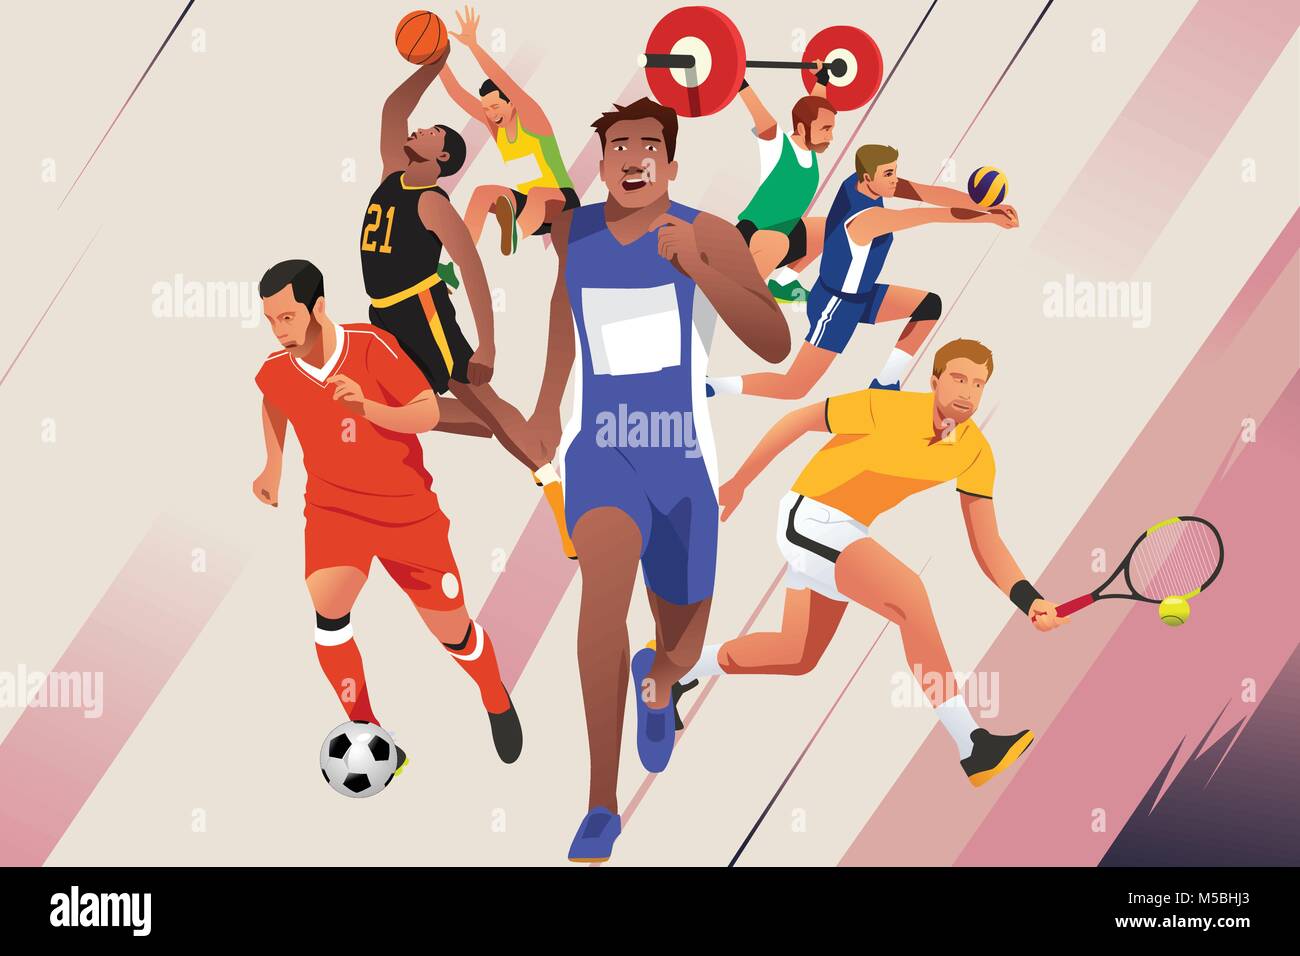 Un vecteur illustration d'athlètes dans différents sports Poster Illustration de Vecteur